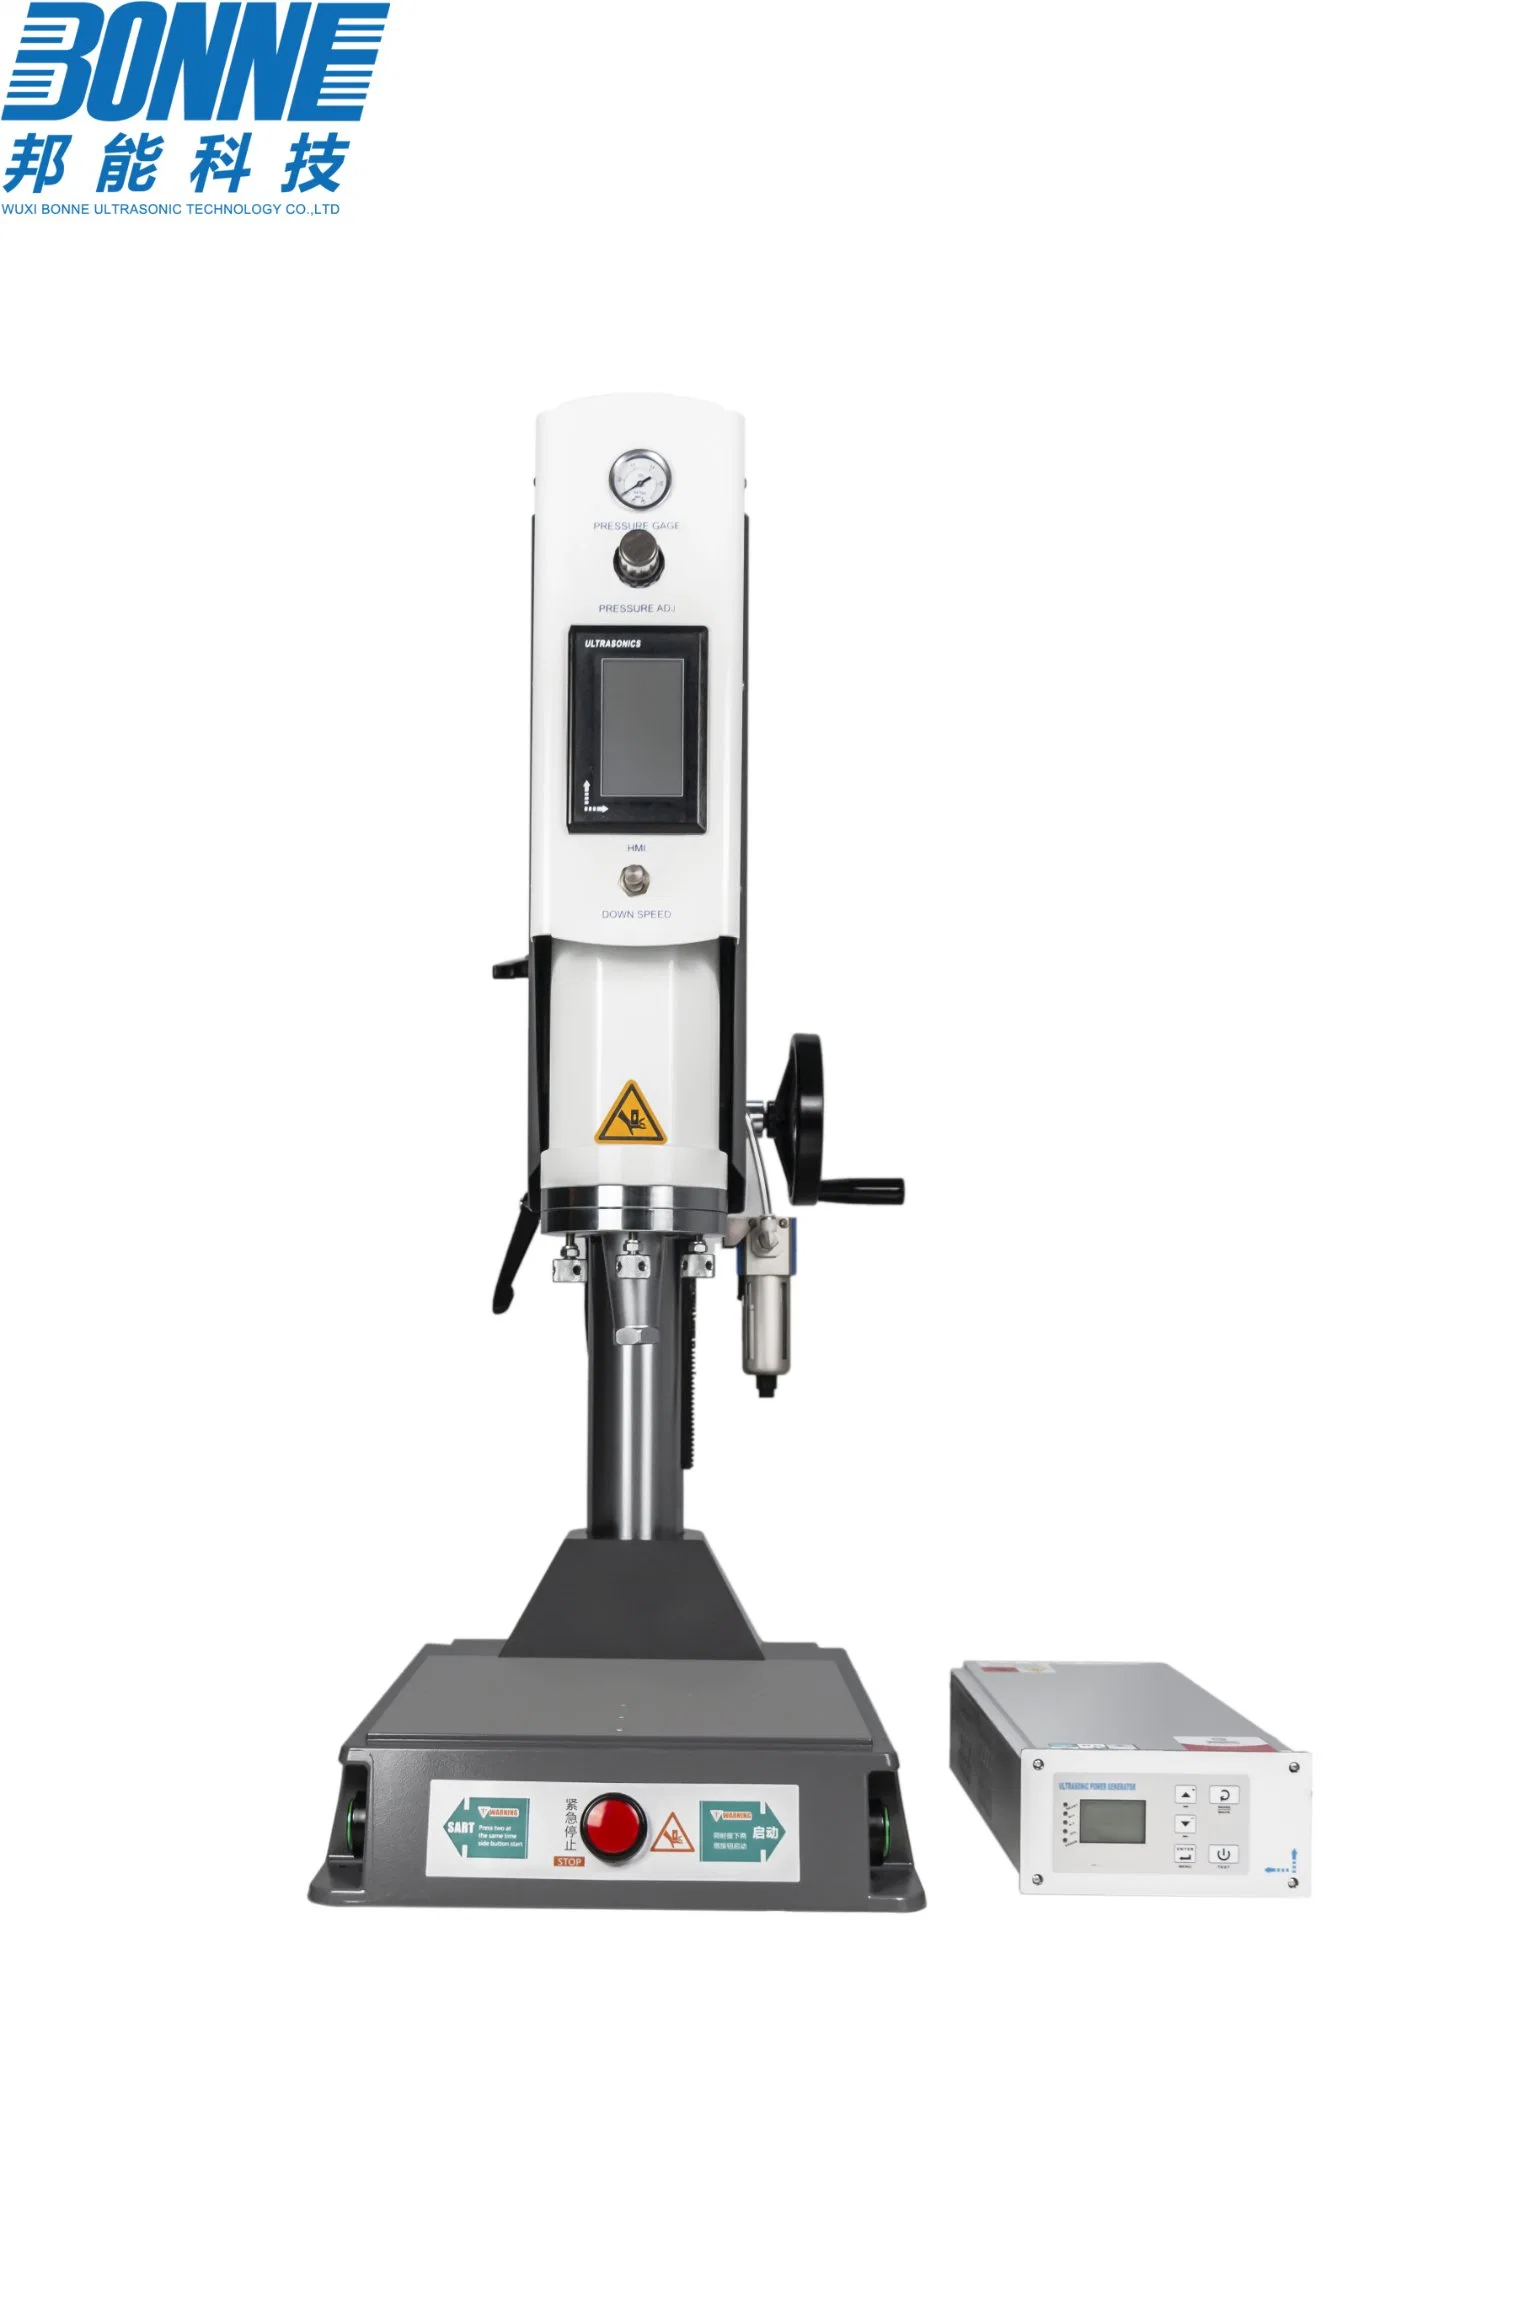 Digital de alta precisión con máquina de soldadura por ultrasonidos Auto Tuning función para la soldadura plástica / Elementos Eléctricos